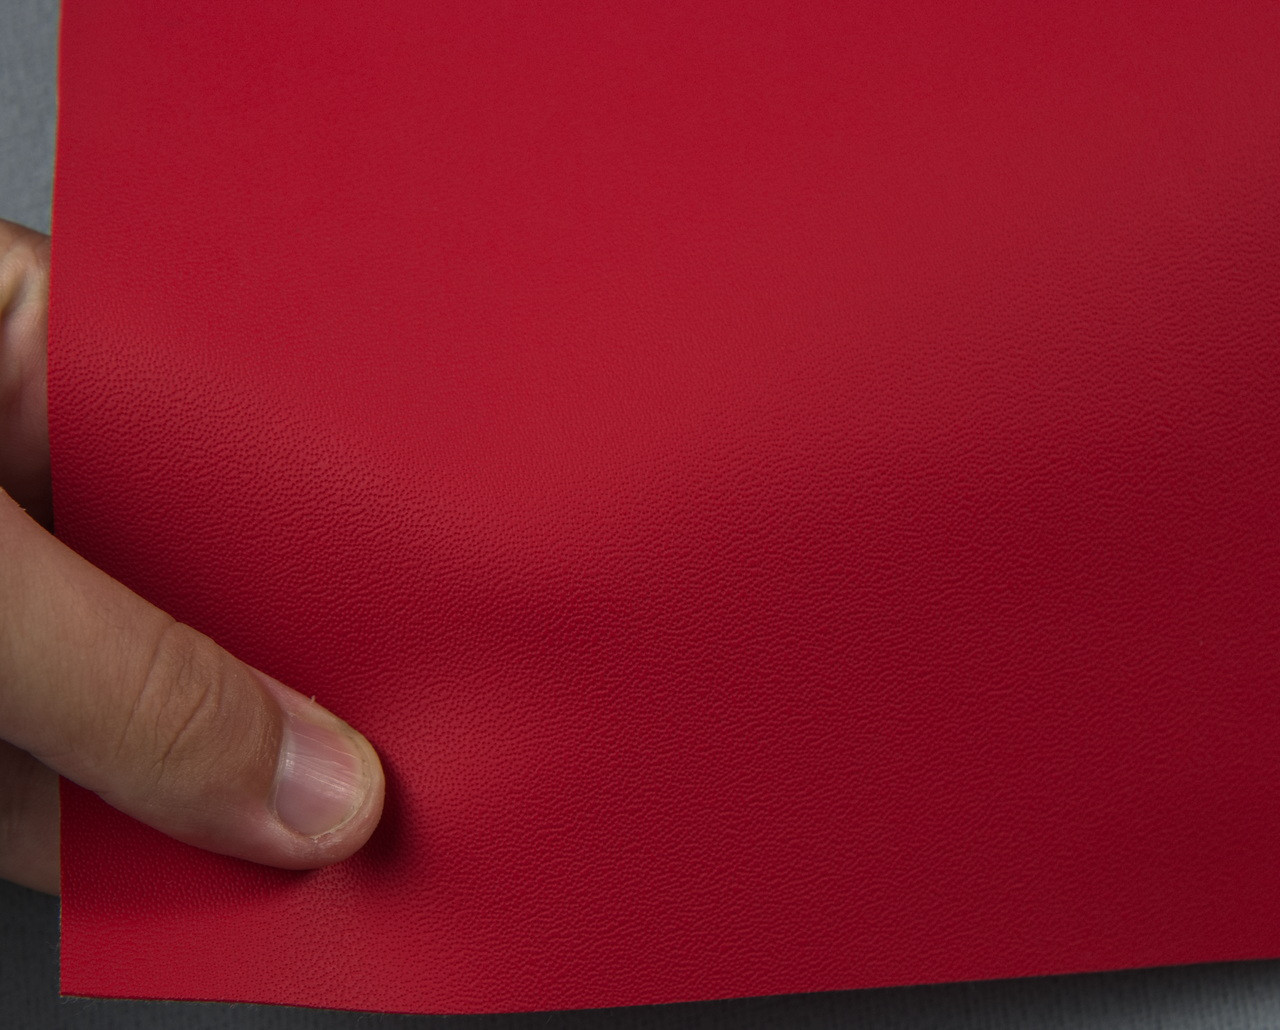 Автомобильный кожзам BENTLEY 1238 красный, на тканевой основе, ширина 140см, Турция детальная фотка